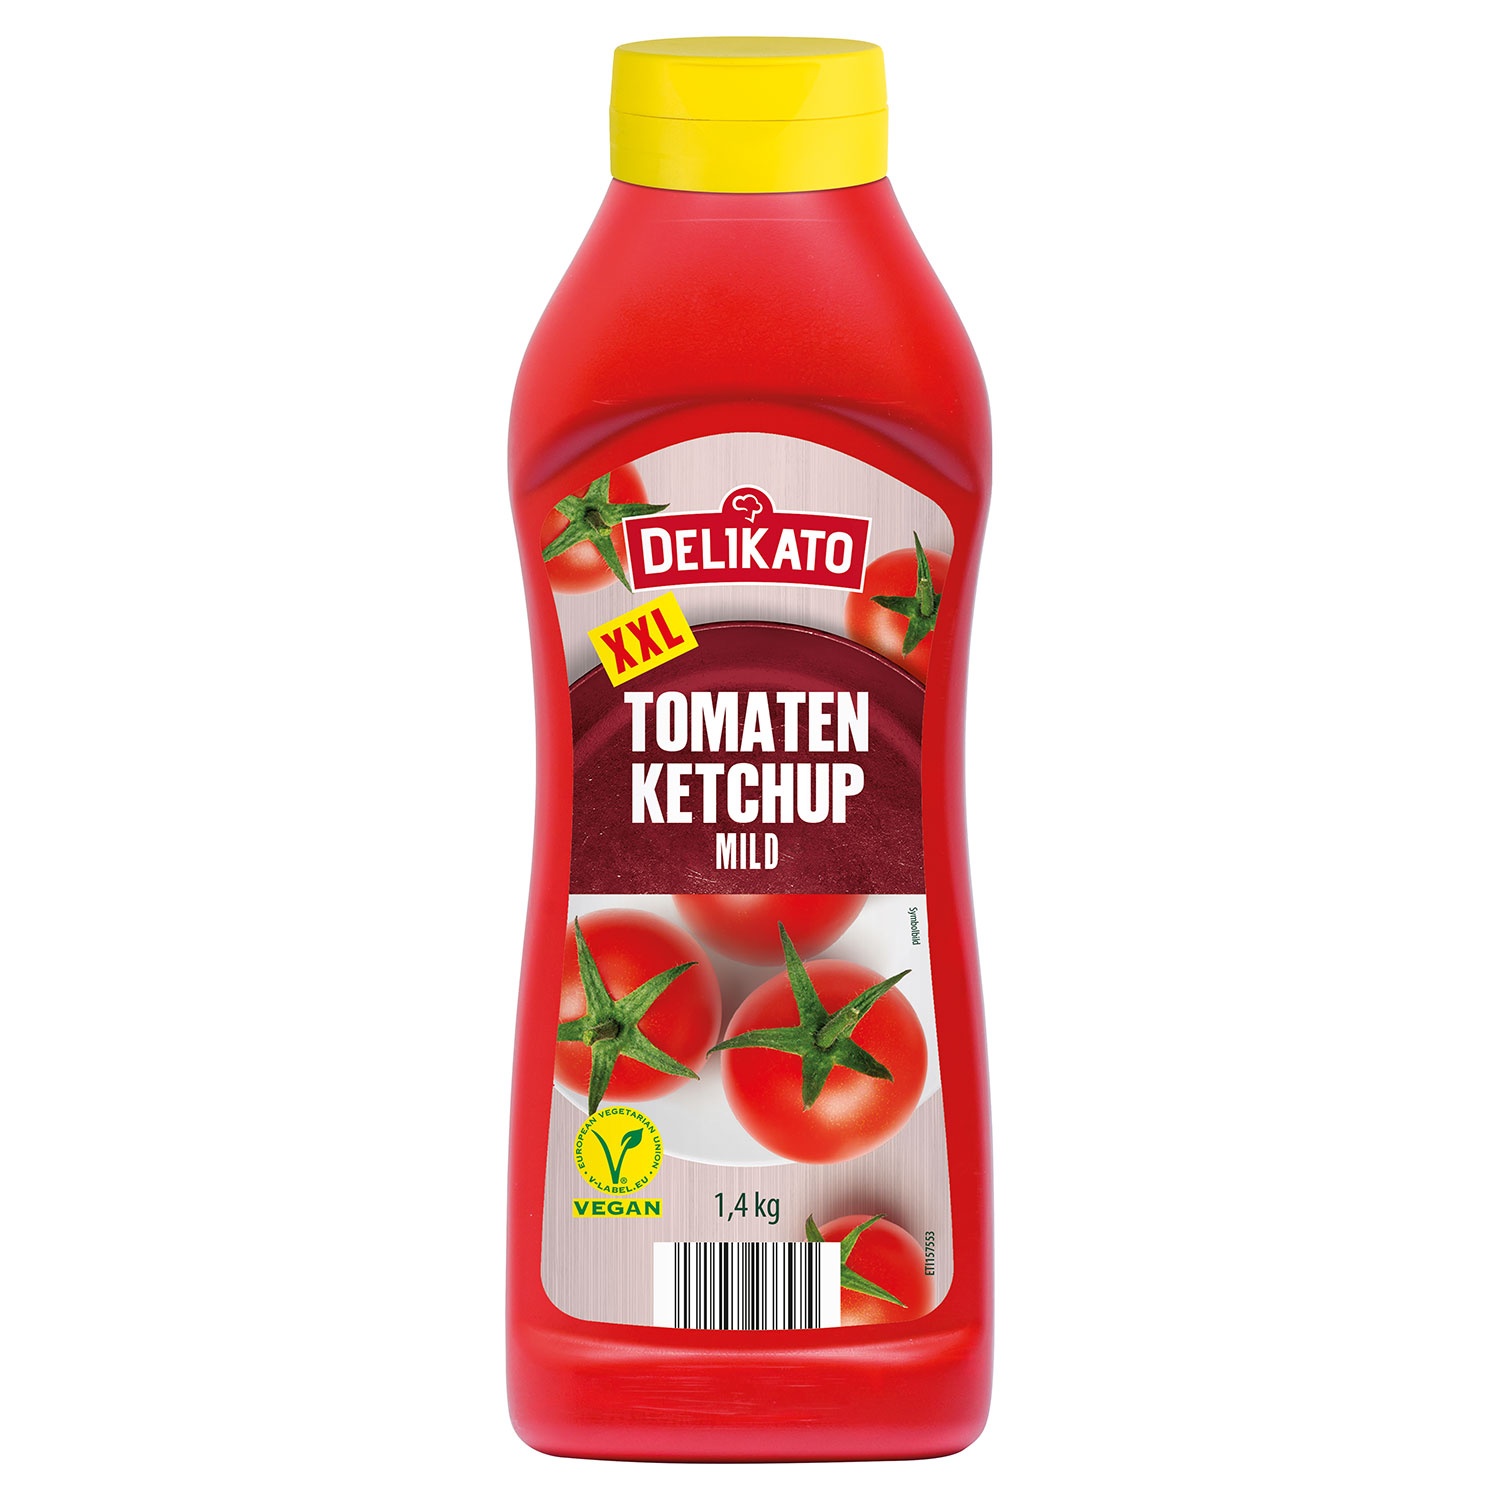 DELIKATO Tomatenketchup 1,4 kg